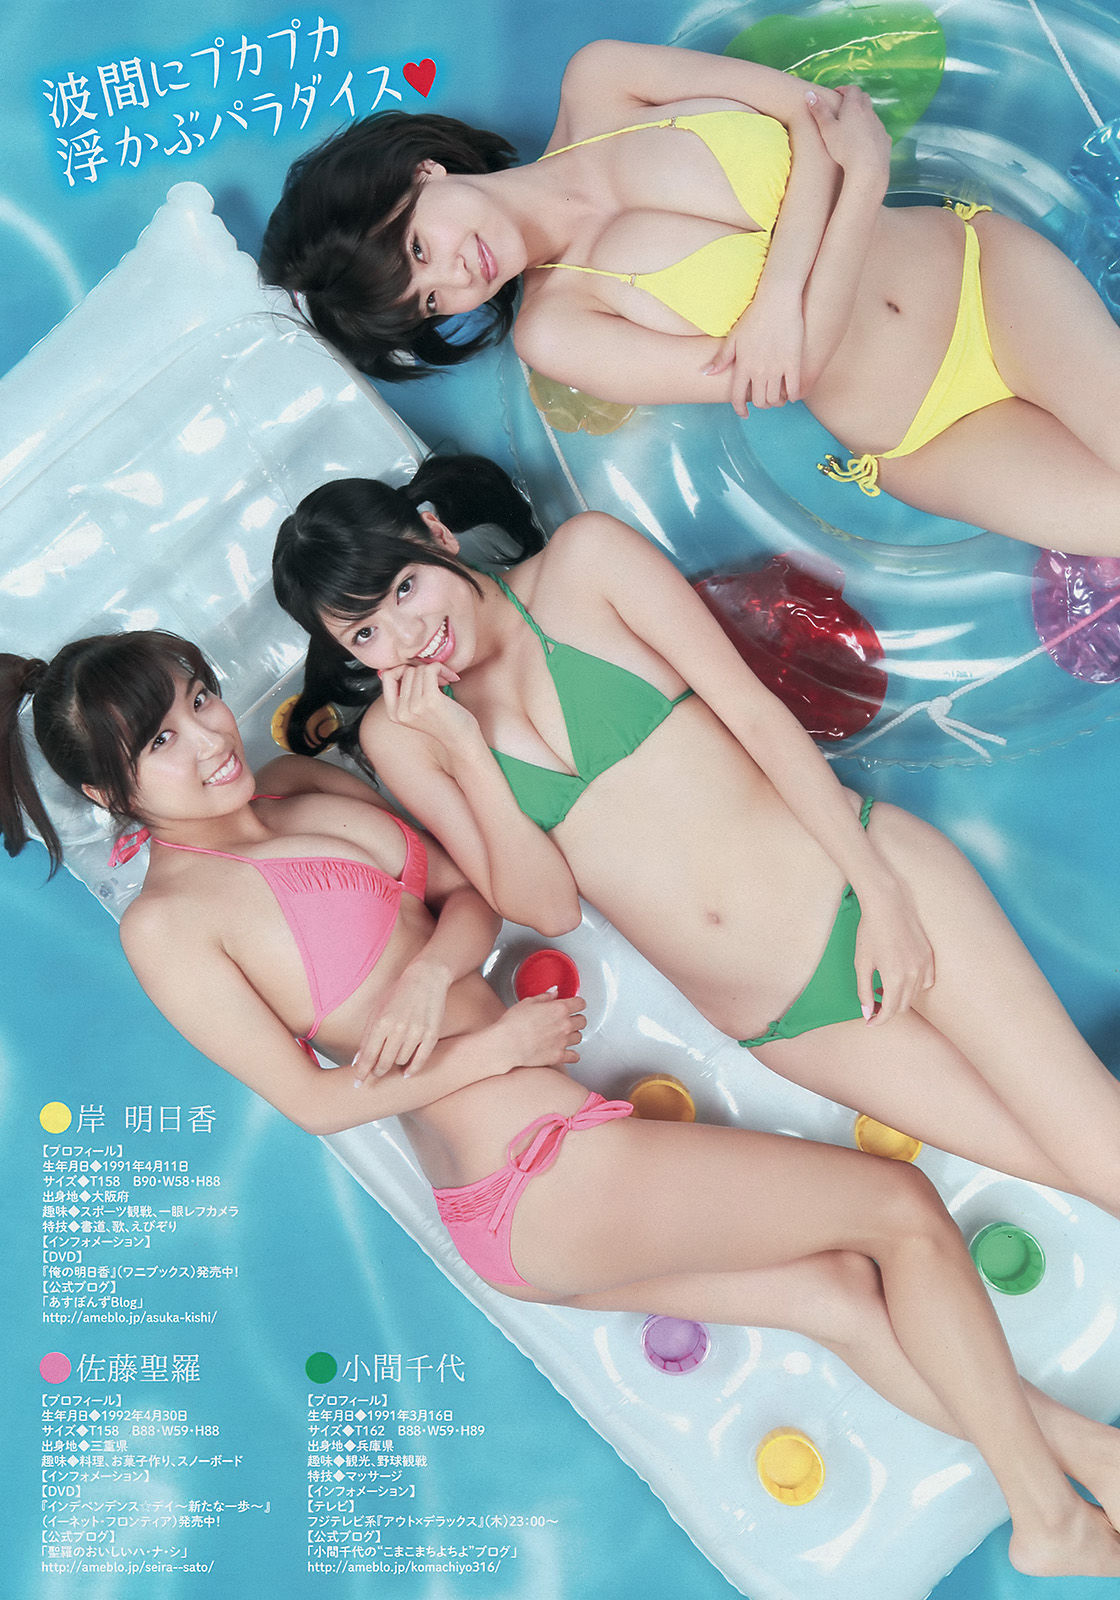 [Young Magazine]杂志:中村静香高品质私房写真在线浏览(12P)